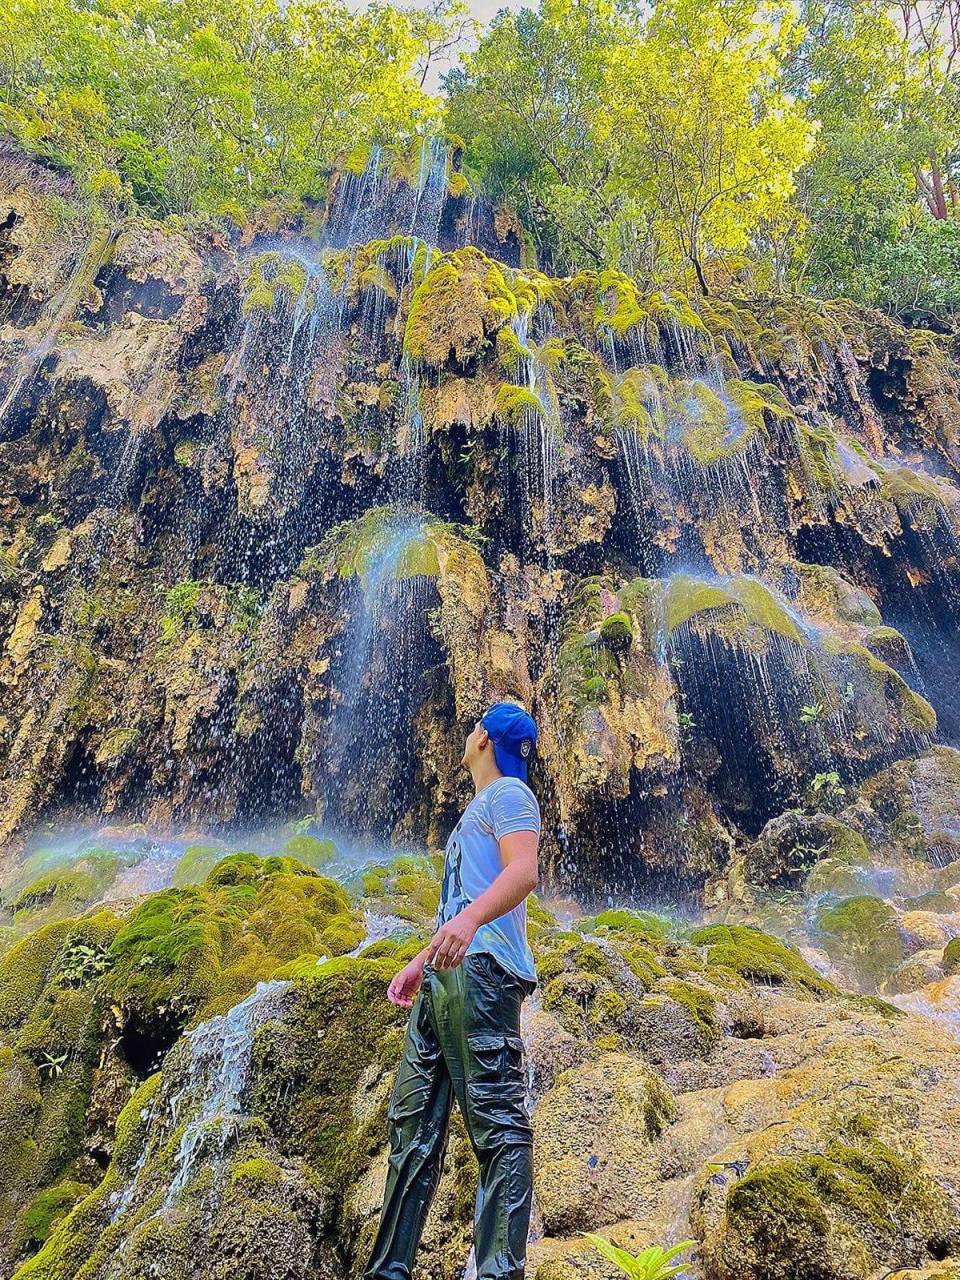 Reserva natural El Tejute. Si desea conocerlo, debe viajar a San Antonio, Copán, Honduras. Si le gusta practicar montañismo es el sitio ideal para usted. Entre sus principales atractivos turísticos se encuentra la impresionante cascada petrificada de 30 metros de altura.